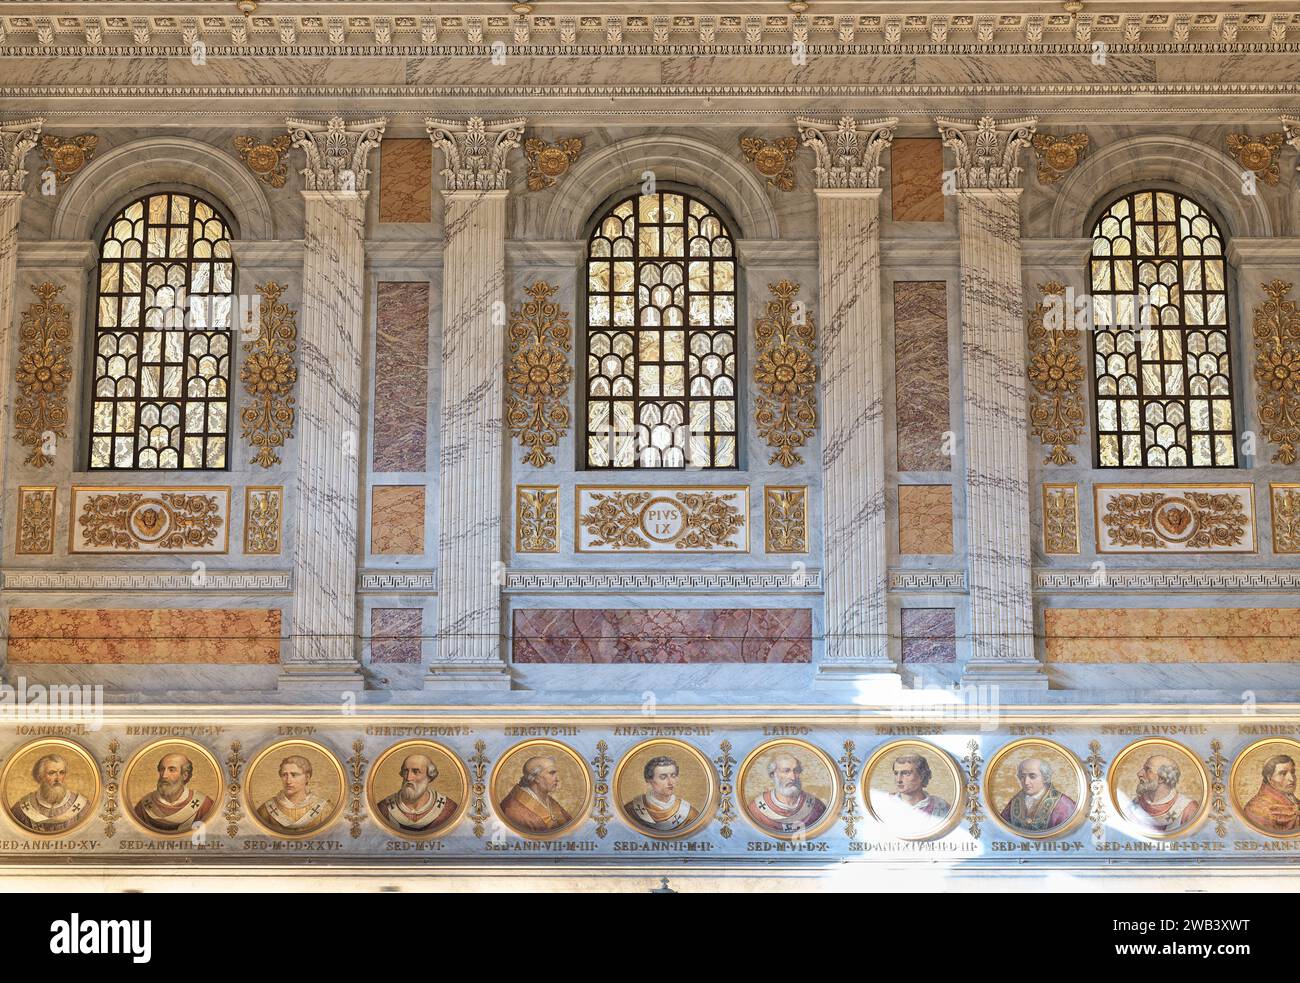 Trio de fenêtres, au-dessus de portraits en mosaïque de papes, à l'extrémité ouest de la basilique papale de Saint Paul hors les murs, Rome, Italie. Banque D'Images